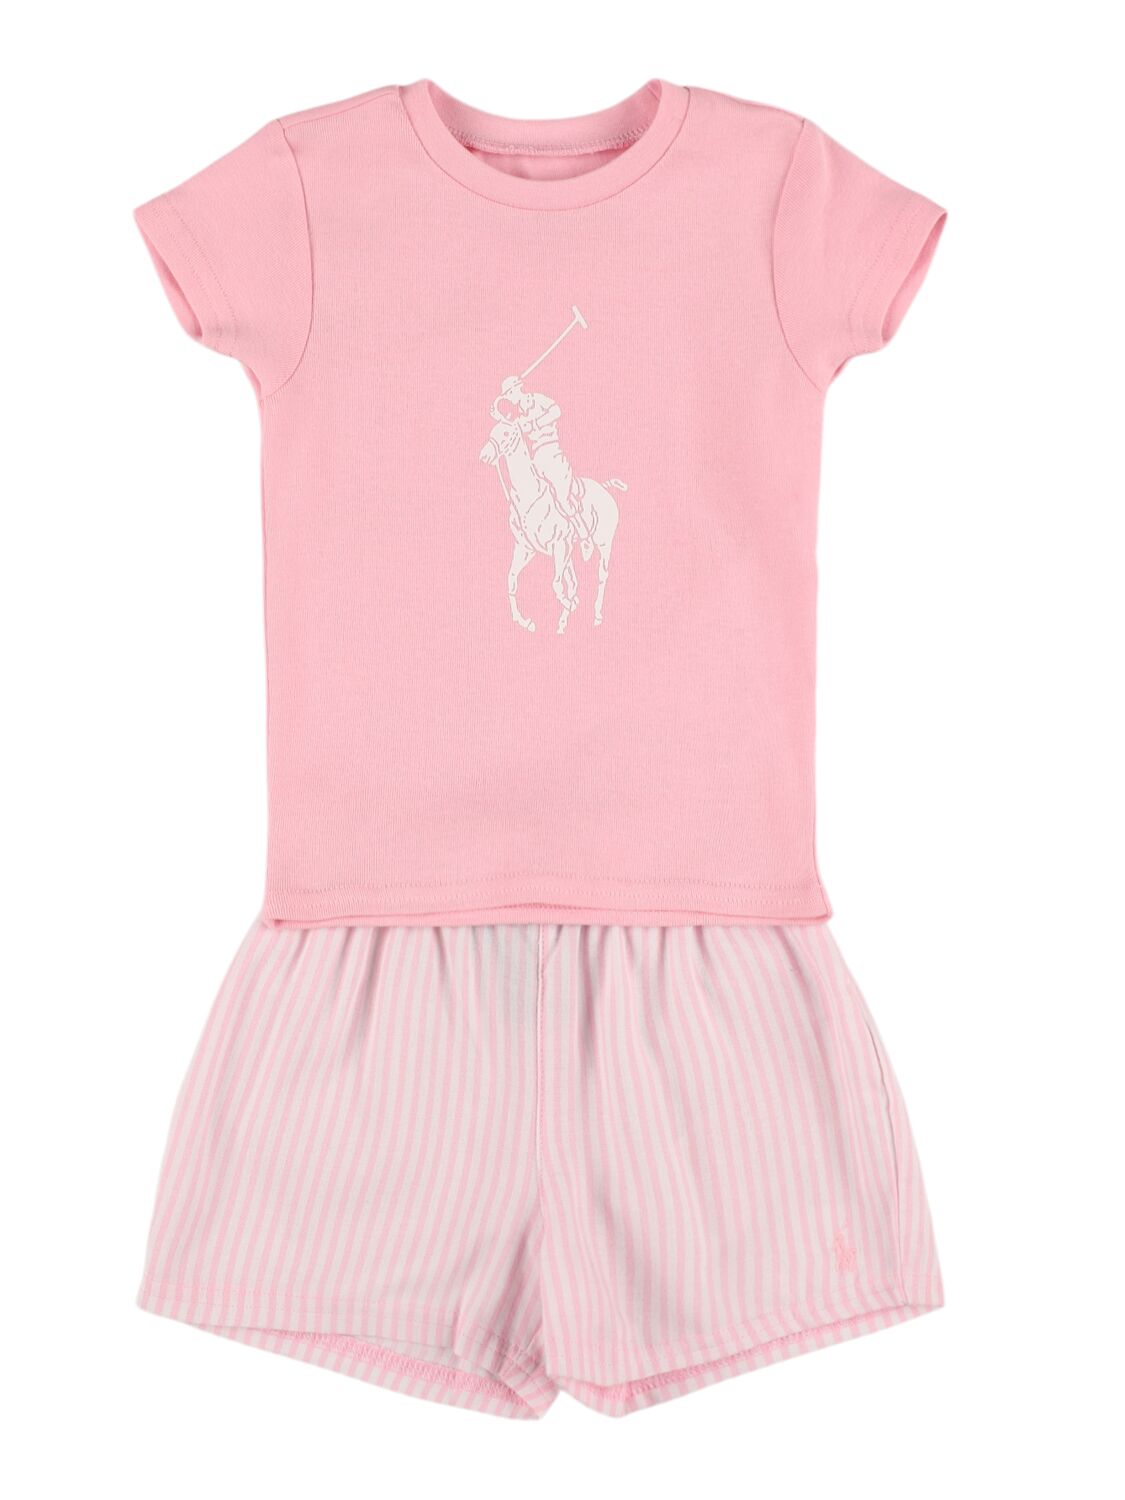 Ralph Lauren Kids' Cotton Jersey T-shirt & Shorts In Pink